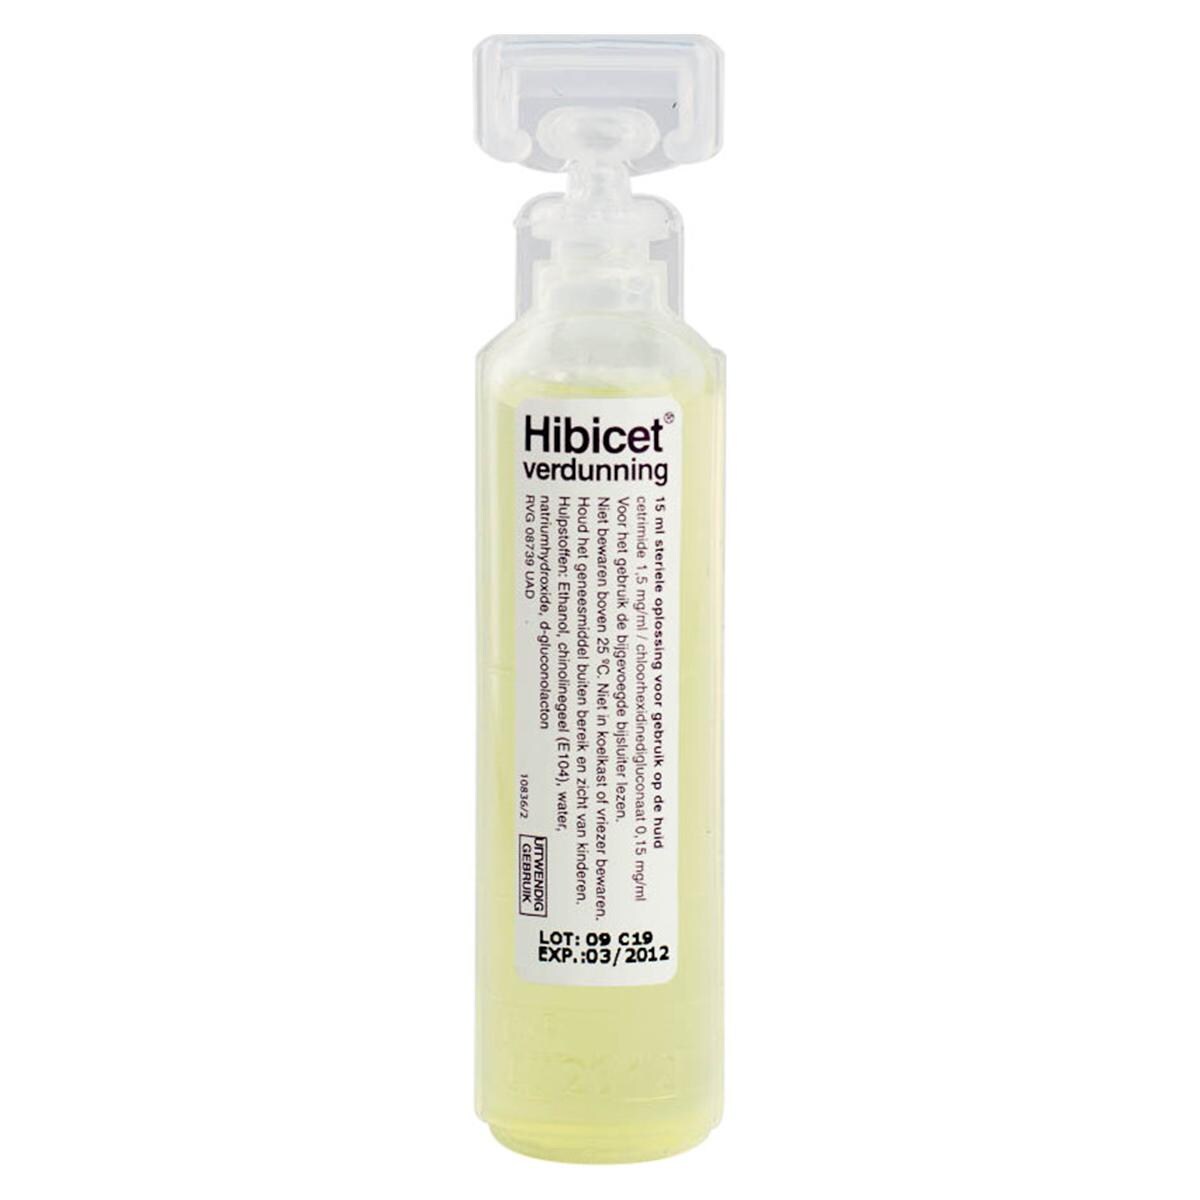 Hibicet desinfectiemiddel - verdunning, 240 x 15 ml